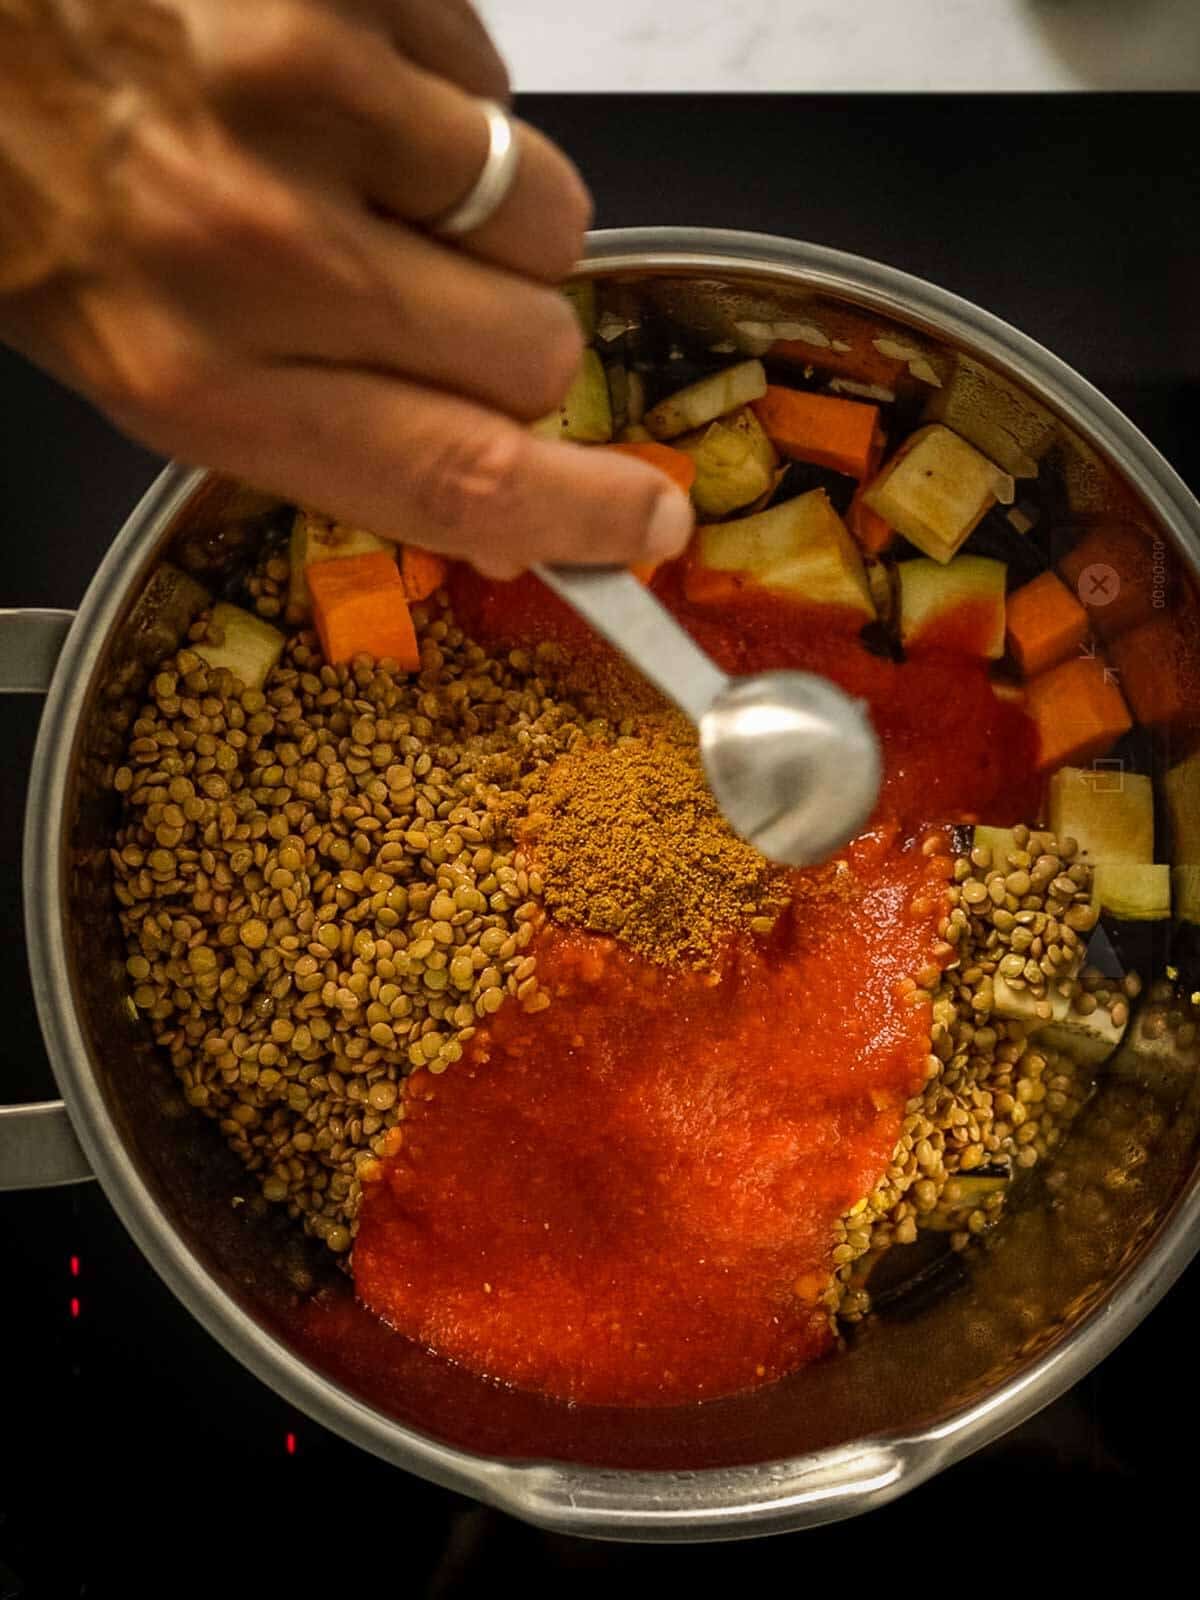 agregarlas lentejas, el jugo e tomate y el resto de los ingredientes a la olla.